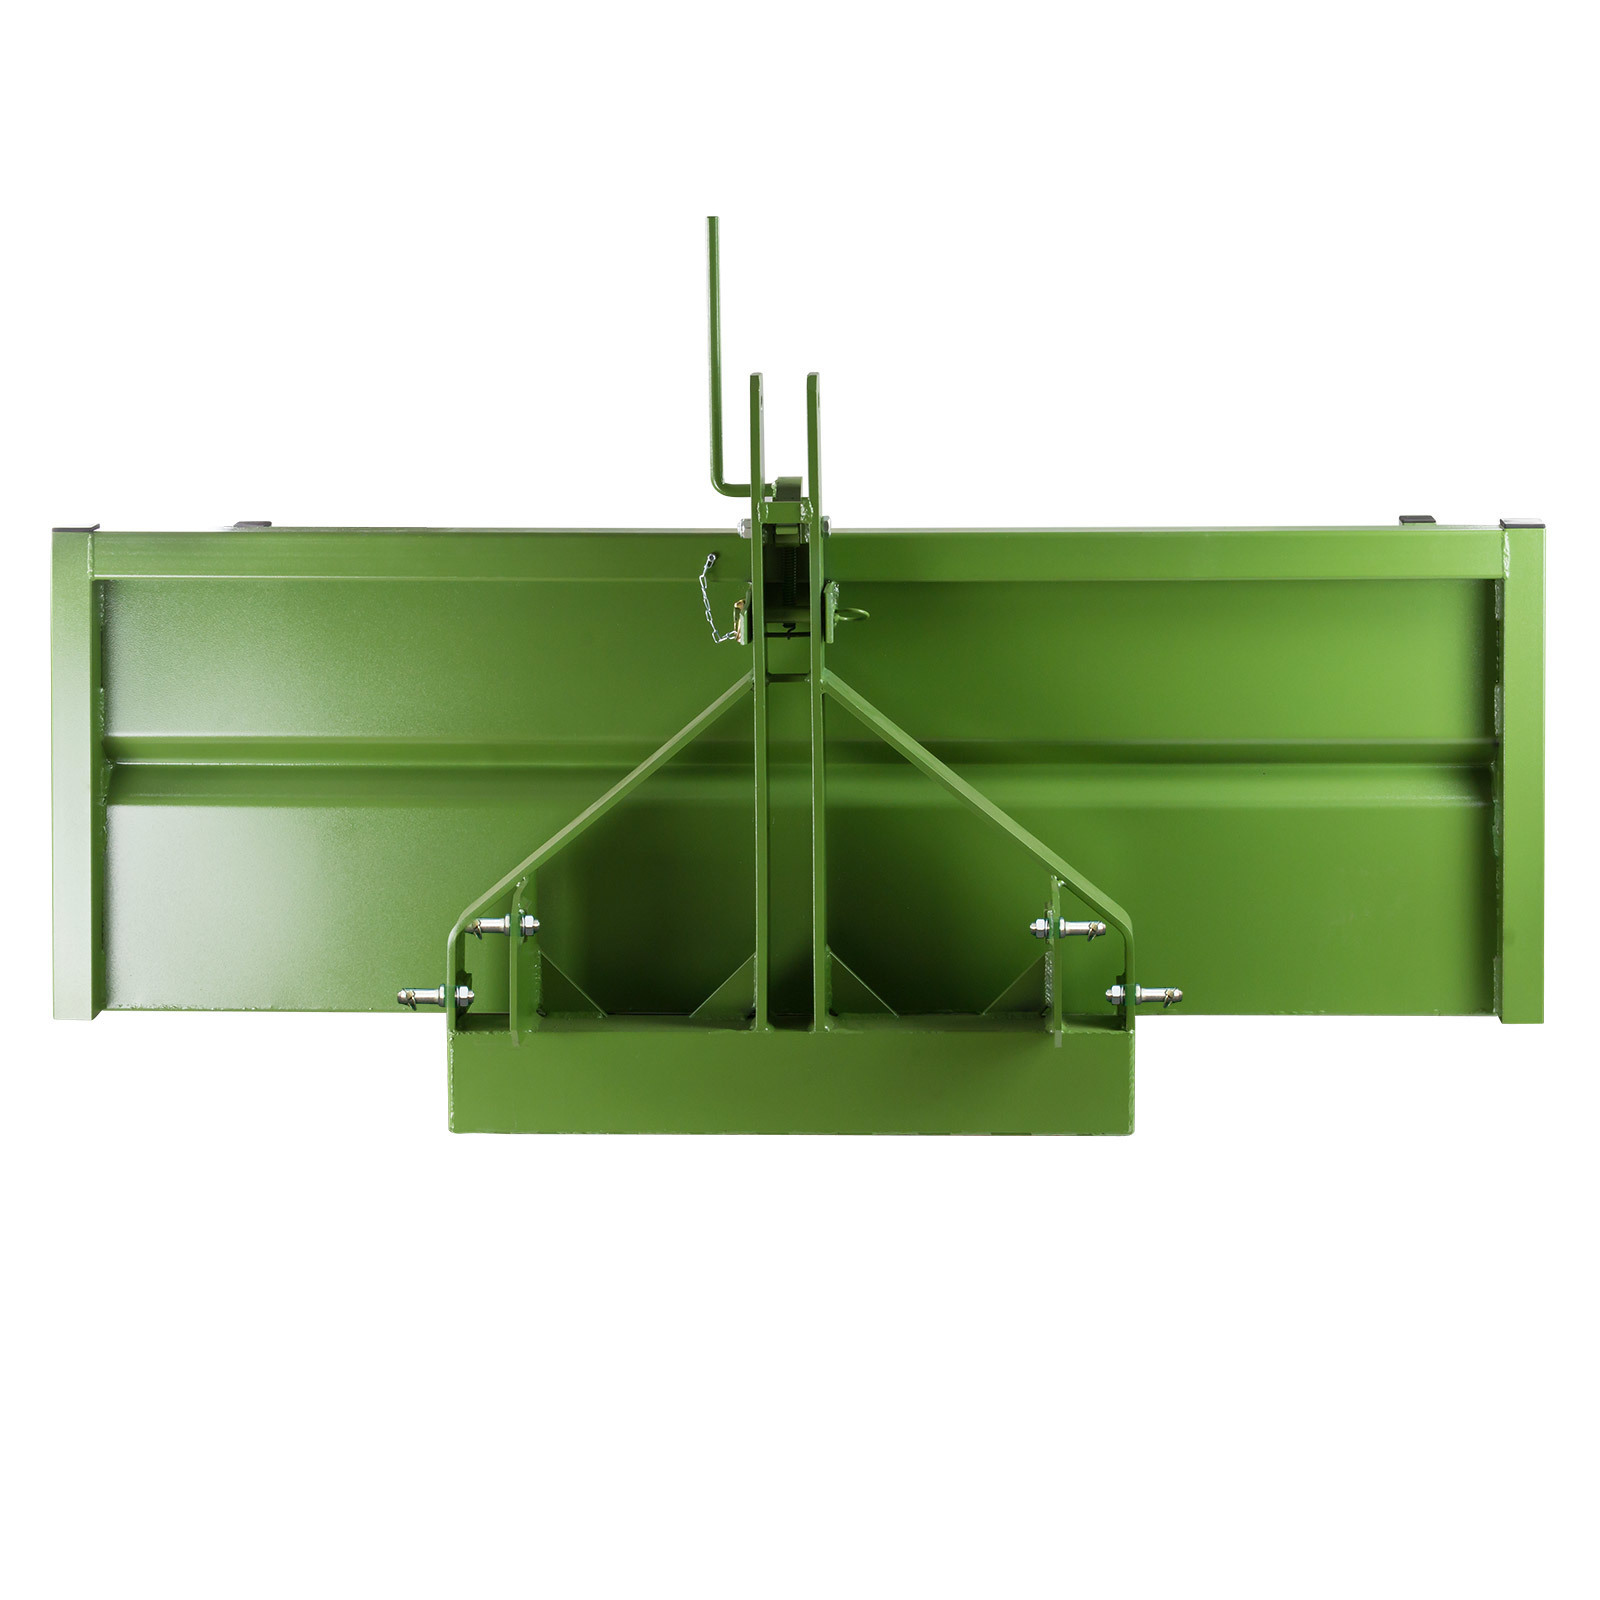 Dema Heckcontainer Heckmulde grün FSL 180cm 500kg